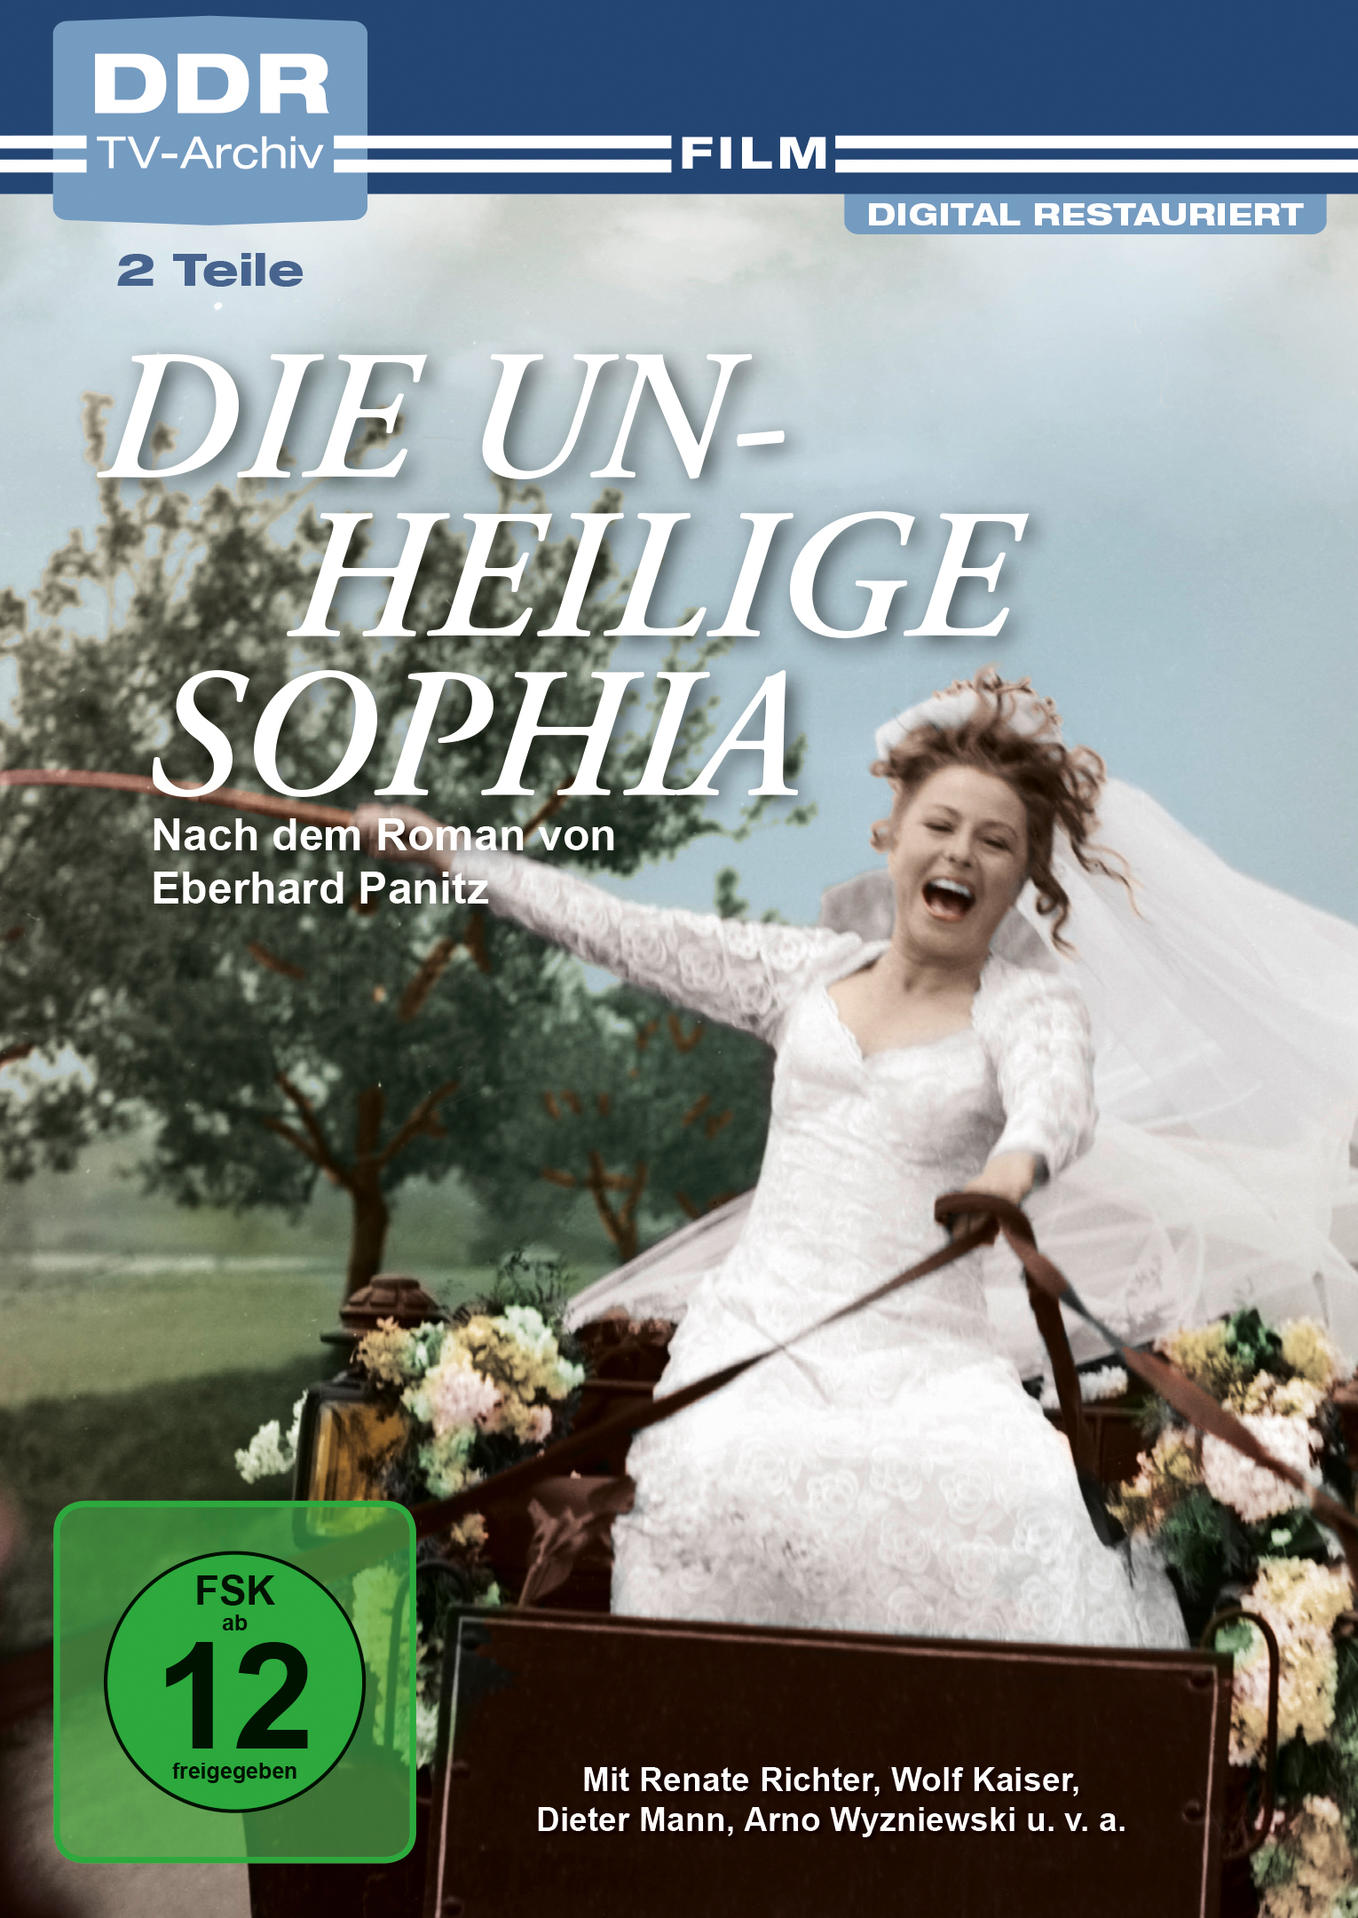 DVD unheilige Die Sophia